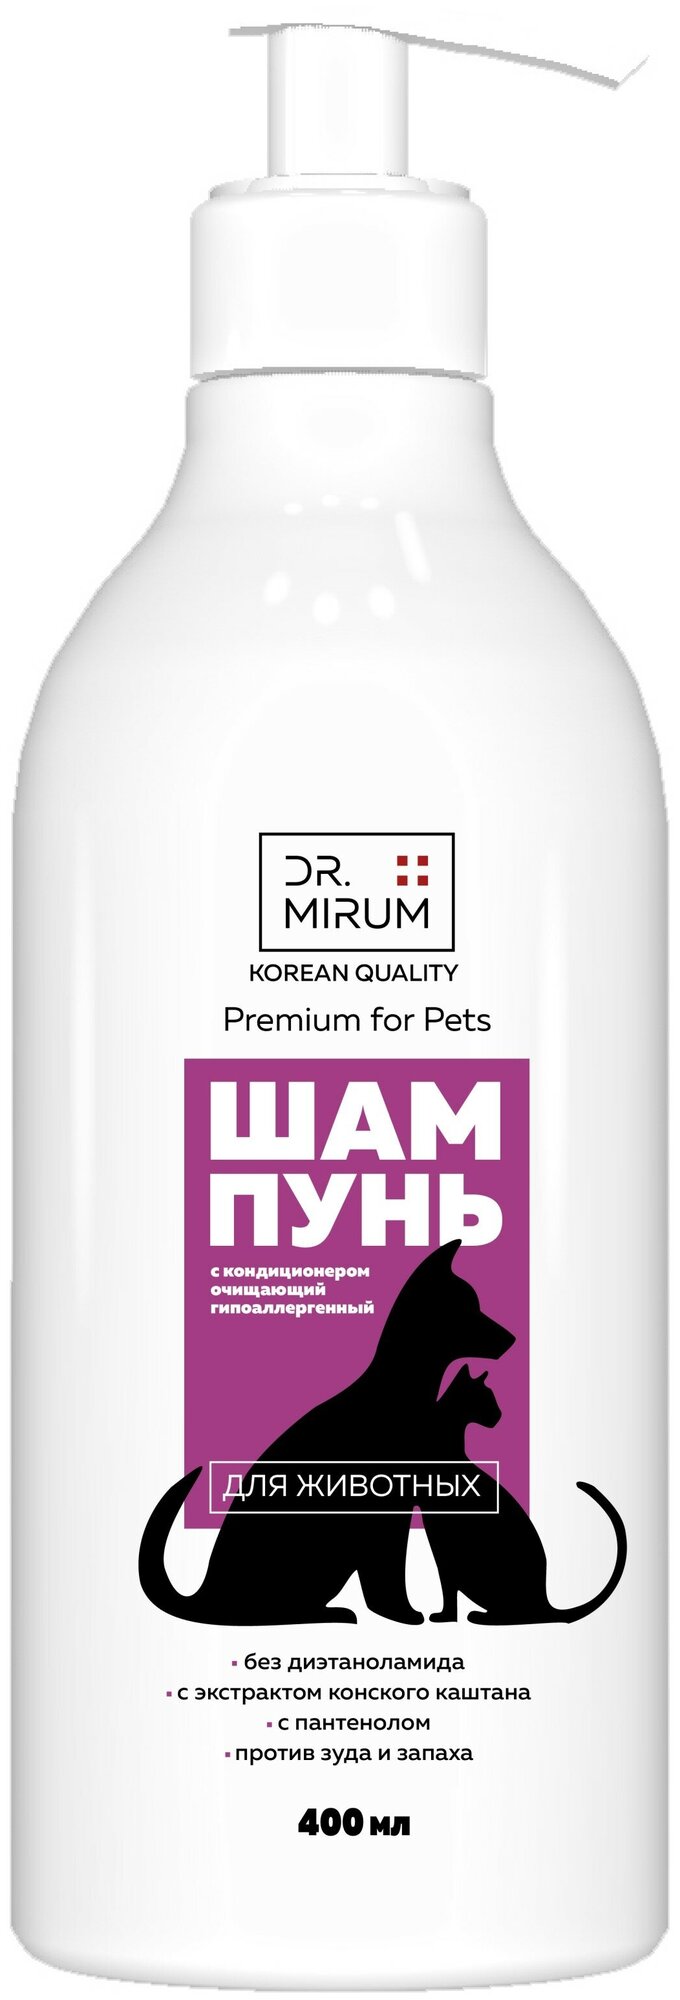 Шампунь Dr. Mirum Premium For Pets гипоаллергенный с кондиционером очищающий, 400 мл